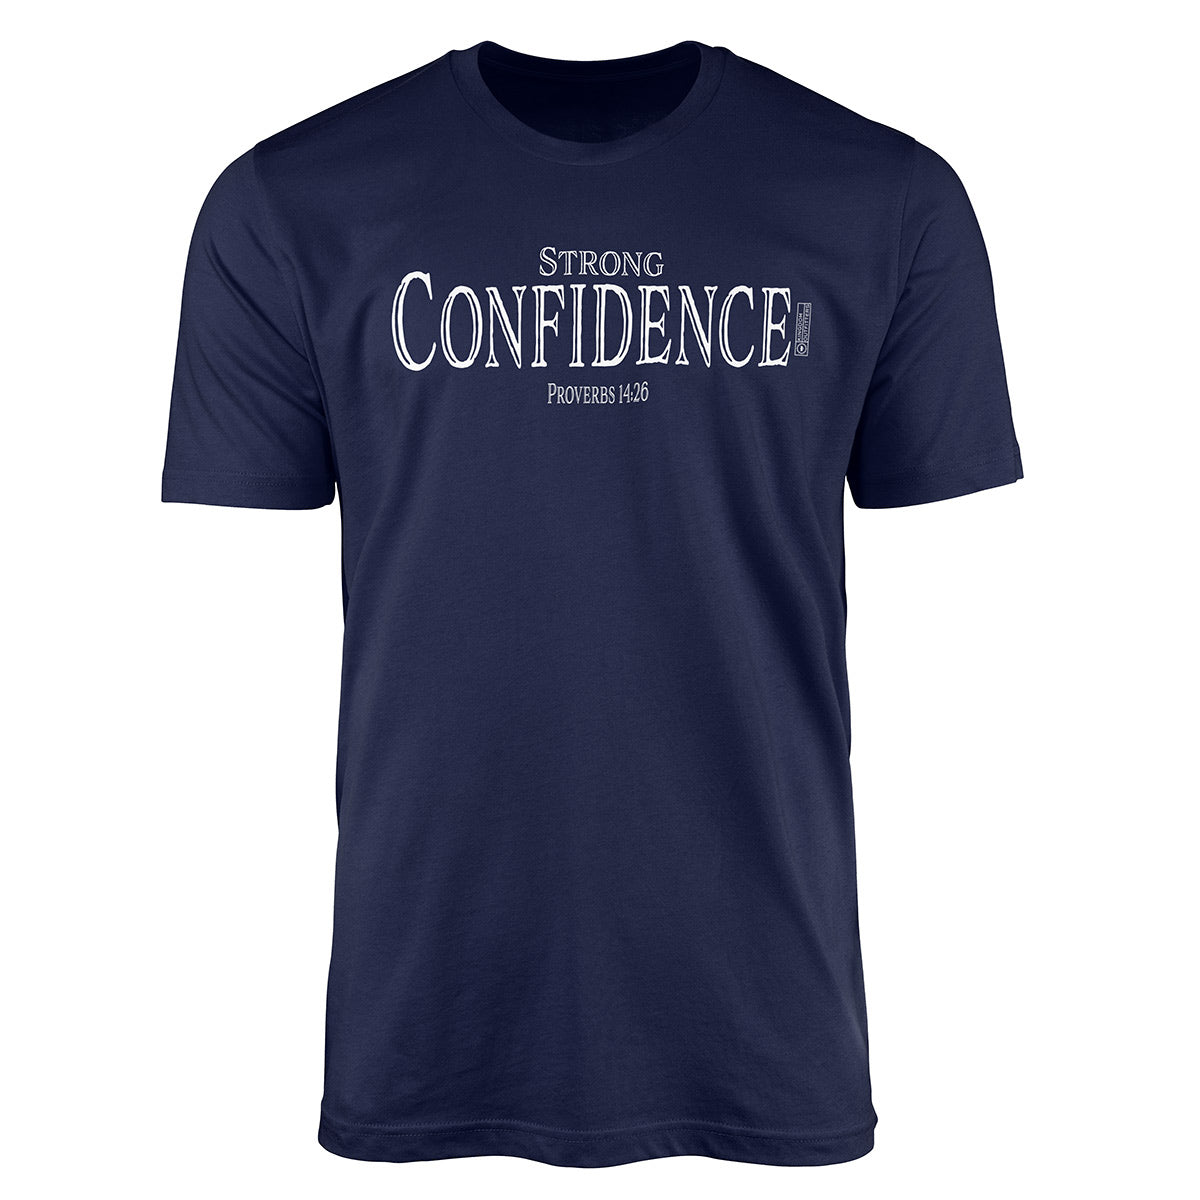 Proverbs 14:26 - Strong Confidence